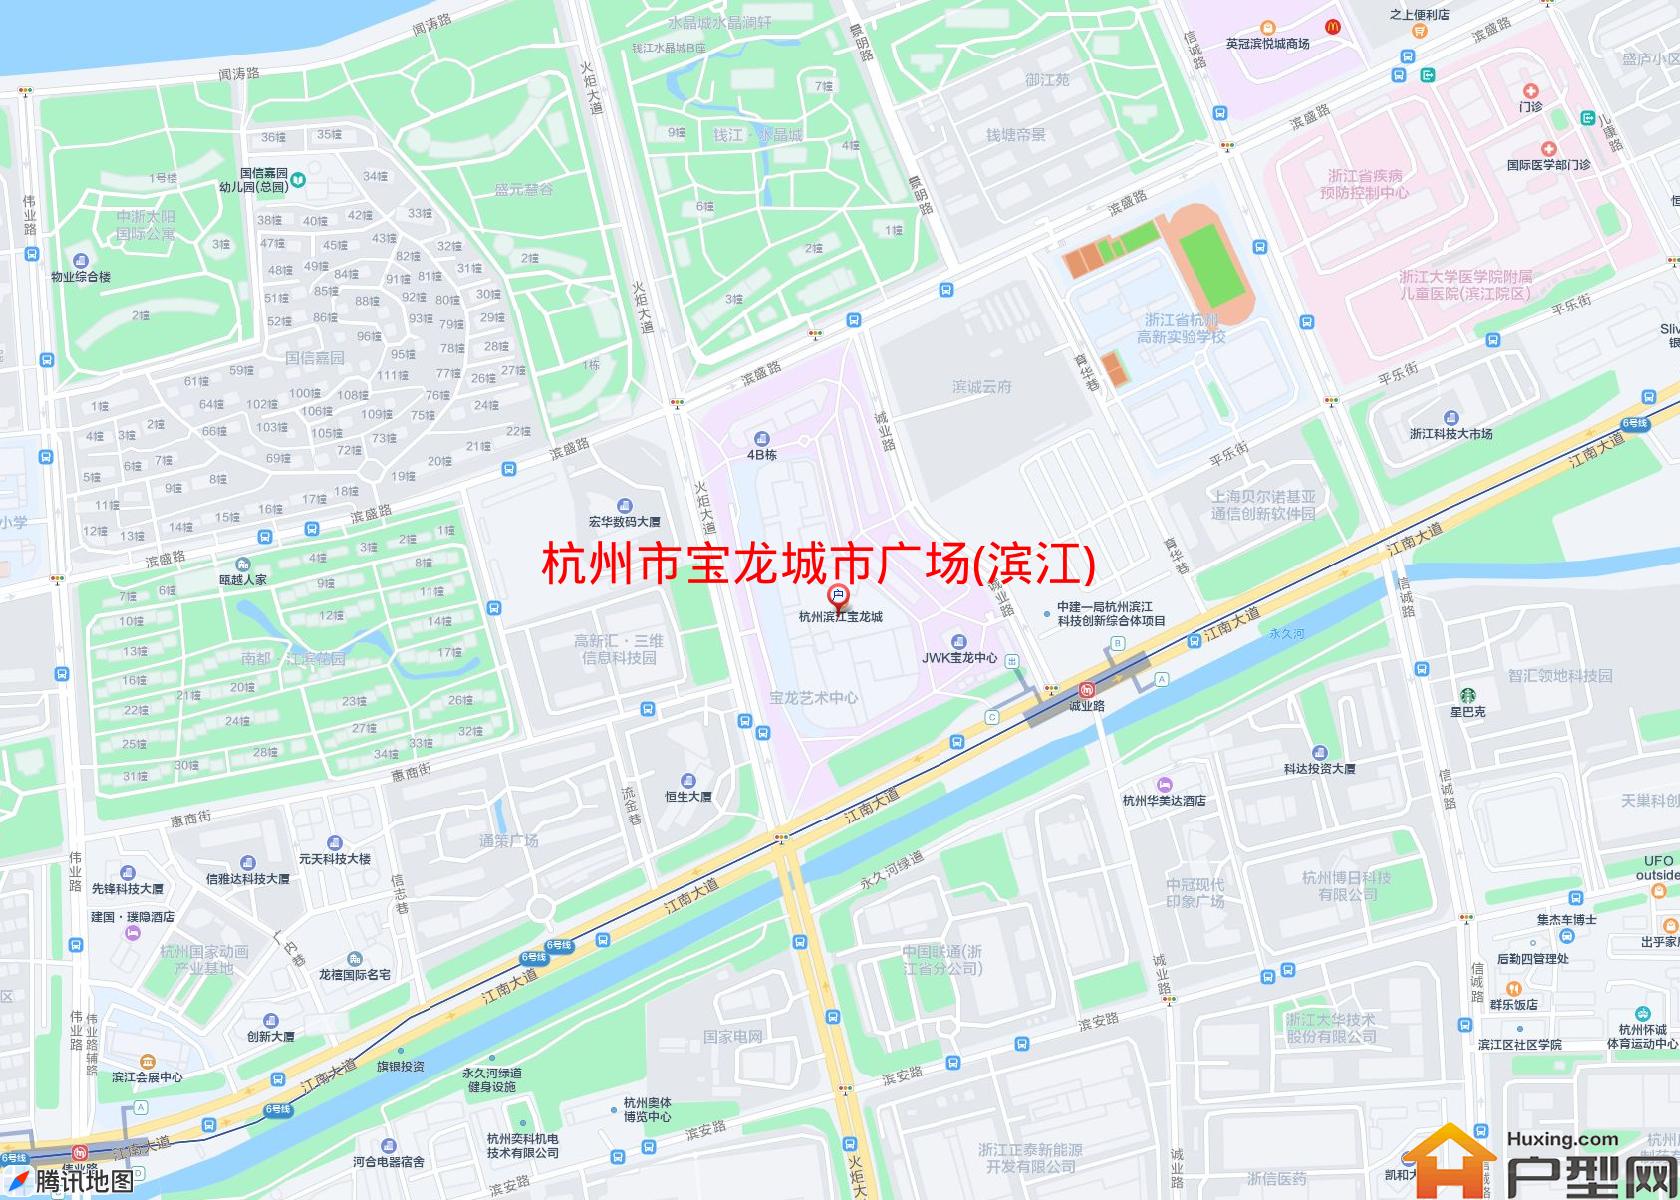 宝龙城市广场(滨江)小区 - 户型网